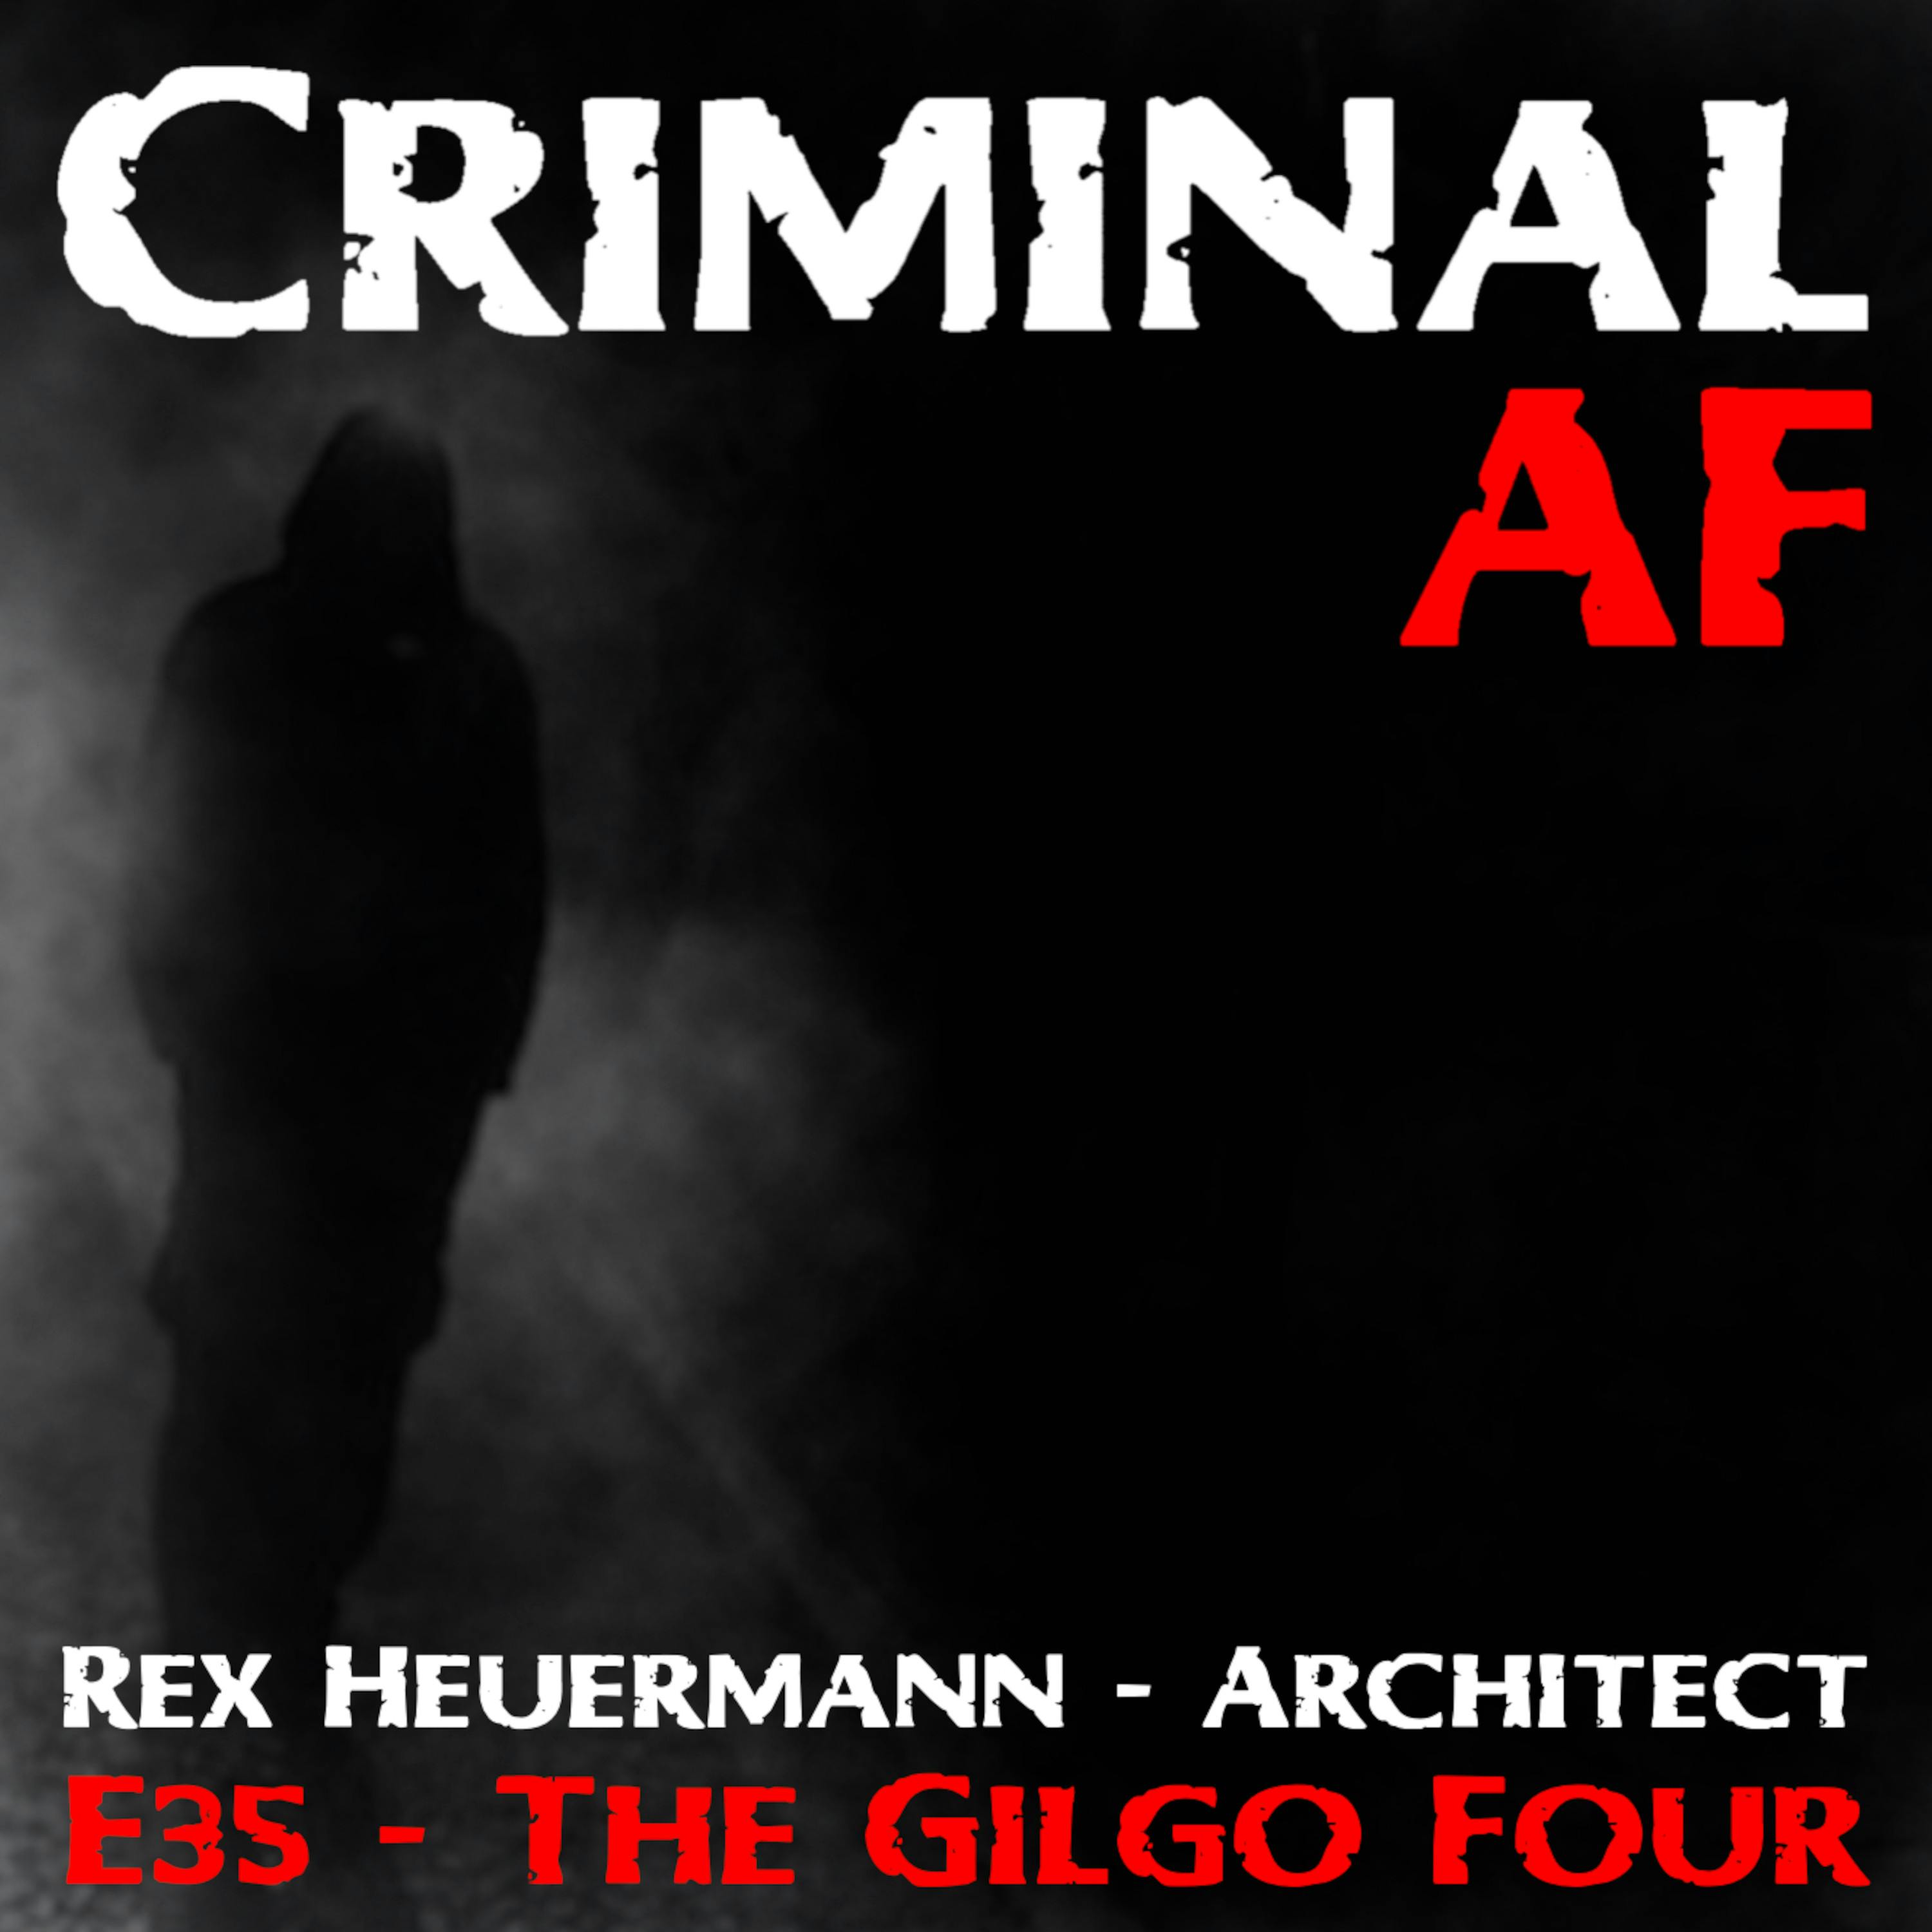 Rex Heuermann - Architect and The Gilgo Four - E35